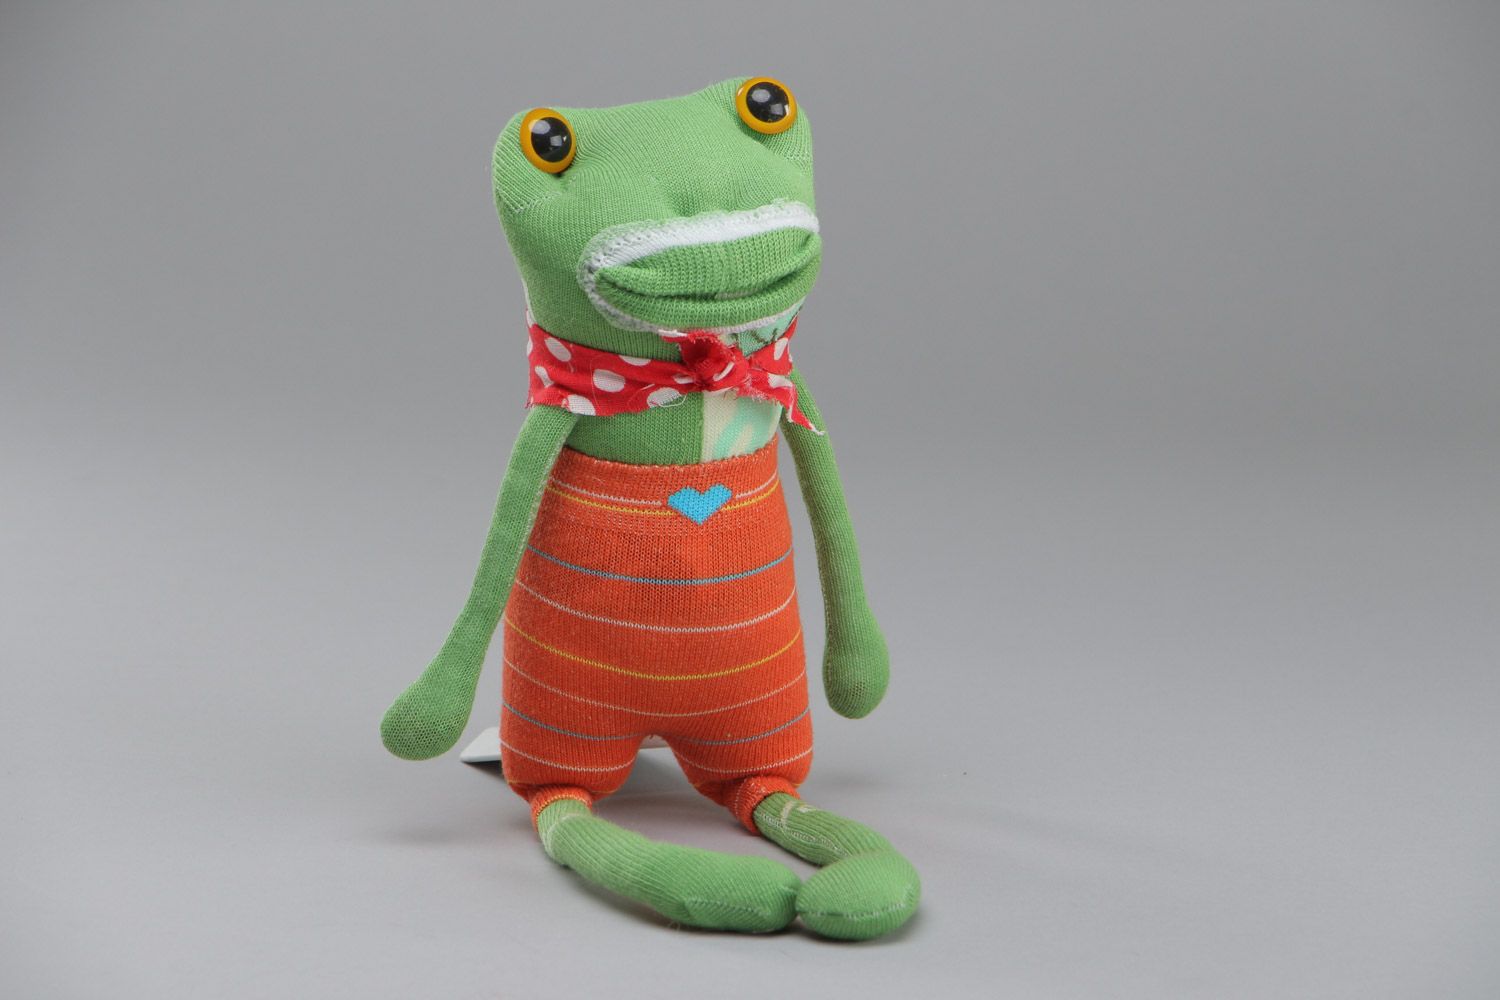 Joli jouet mou fait main en chaussettes grenouille verte cadeau pour enfant photo 1